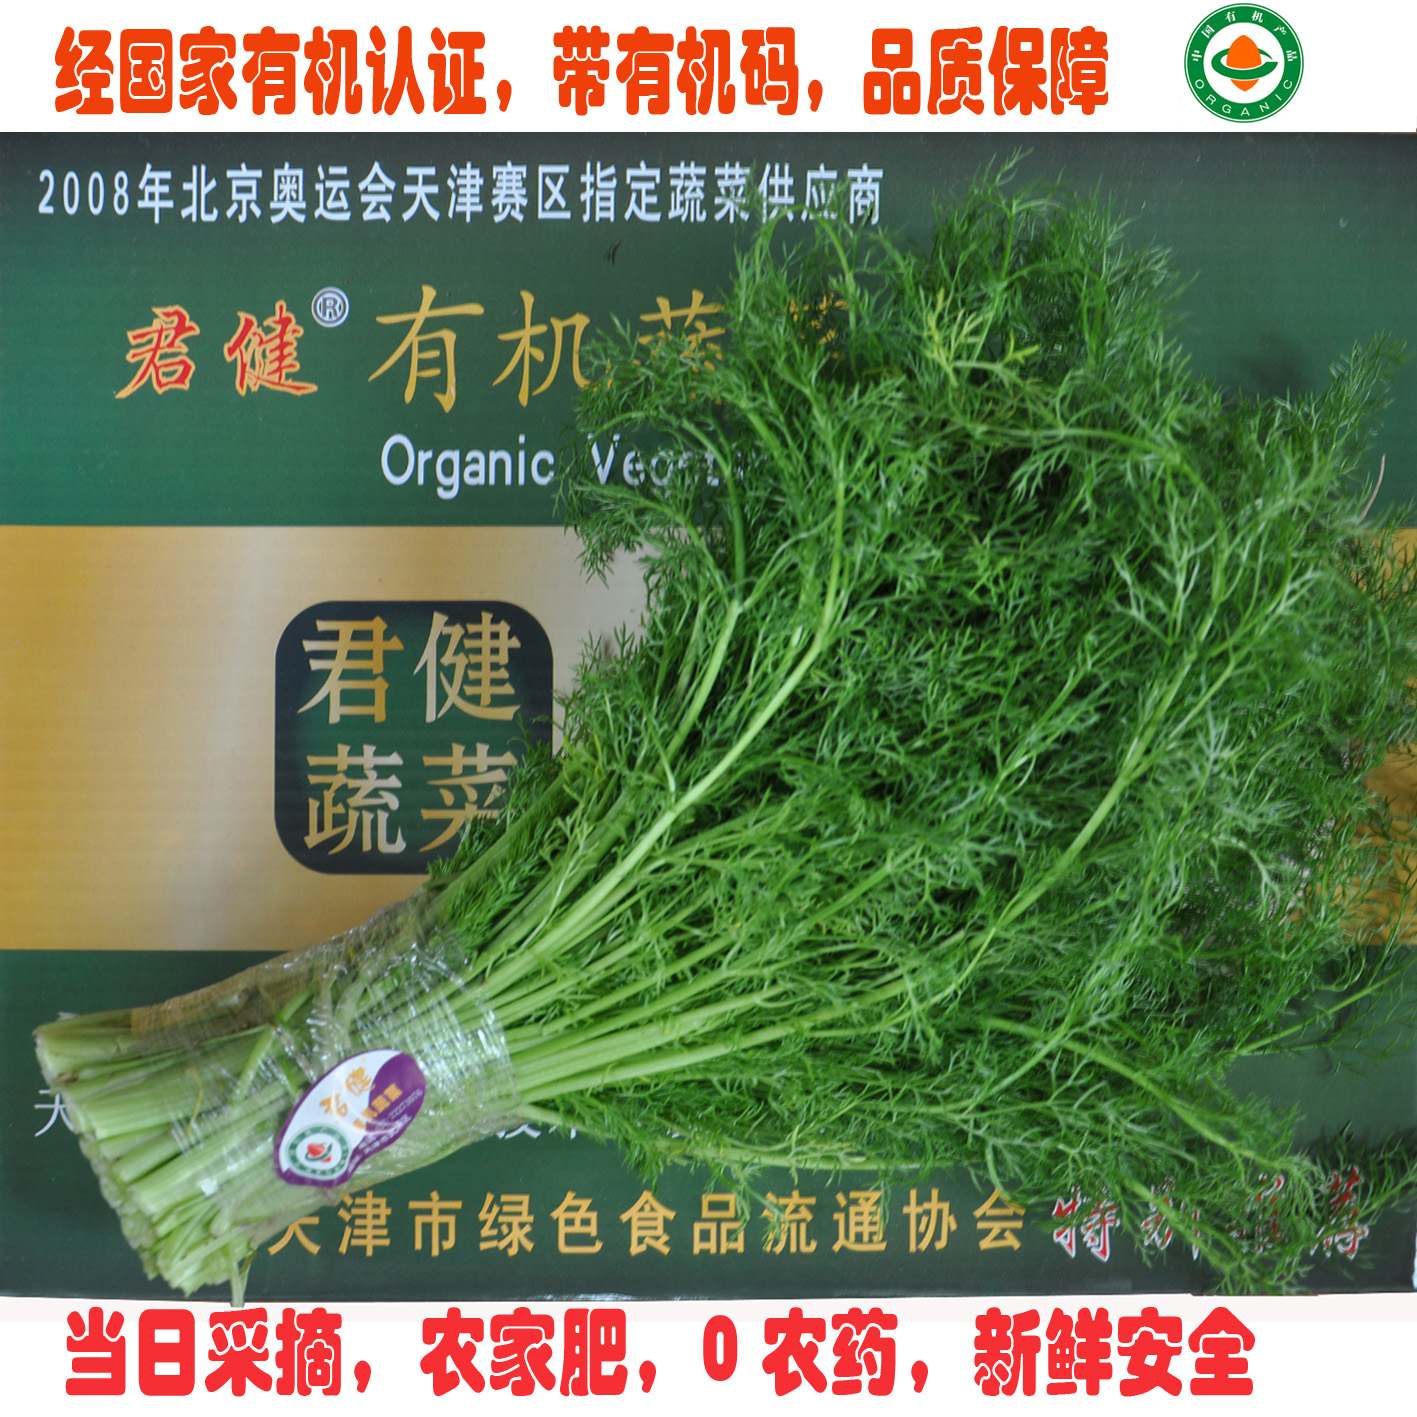 生鲜蔬菜 有机食品 茴香菜 茴香苗 有机蔬菜天津 同城配送 无农药